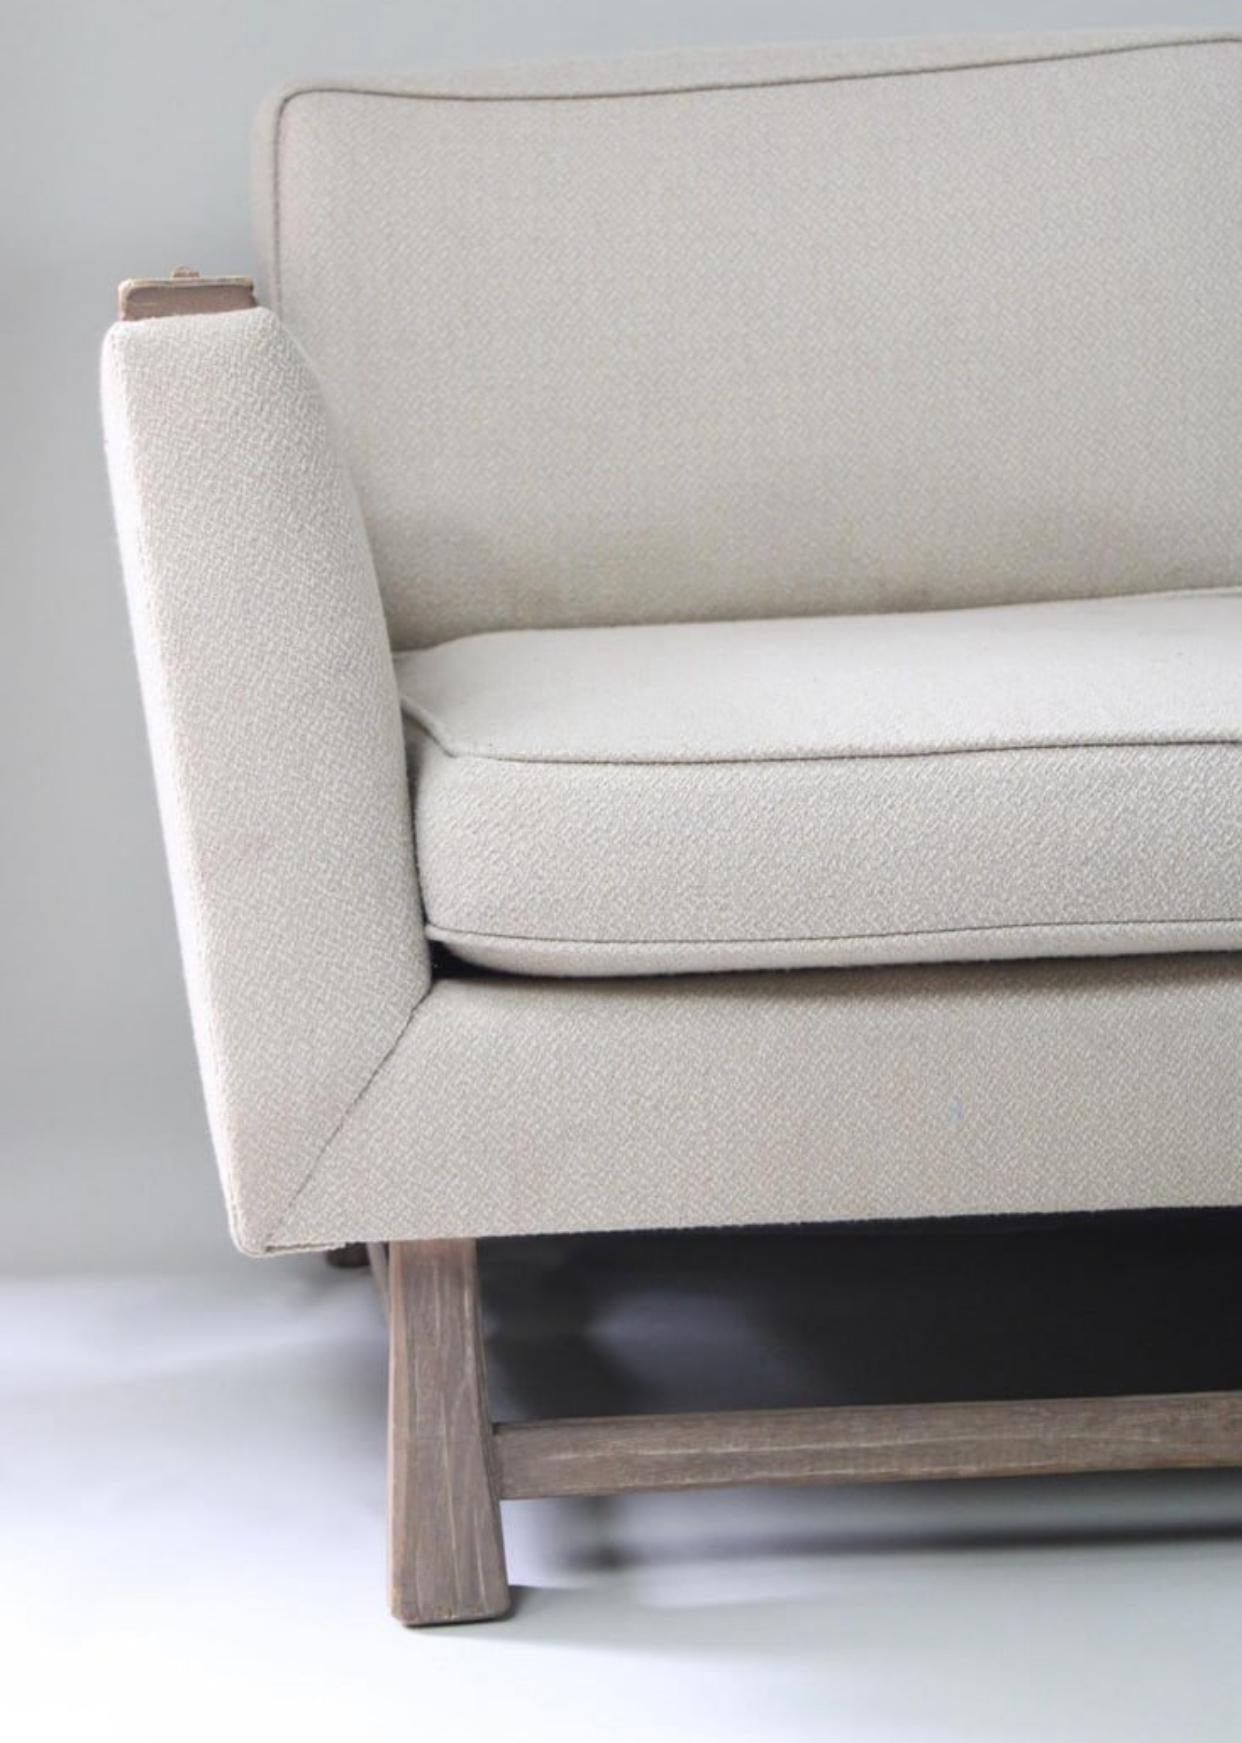 Canapé minimaliste des années 1950 conçu et fabriqué par August Brandt pour Ranch Oak Furniture. Ranch Oak était une marque de meubles au look et à l'ambiance légèrement western. Ce canapé, avec son manque d'ornementation et ses accoudoirs